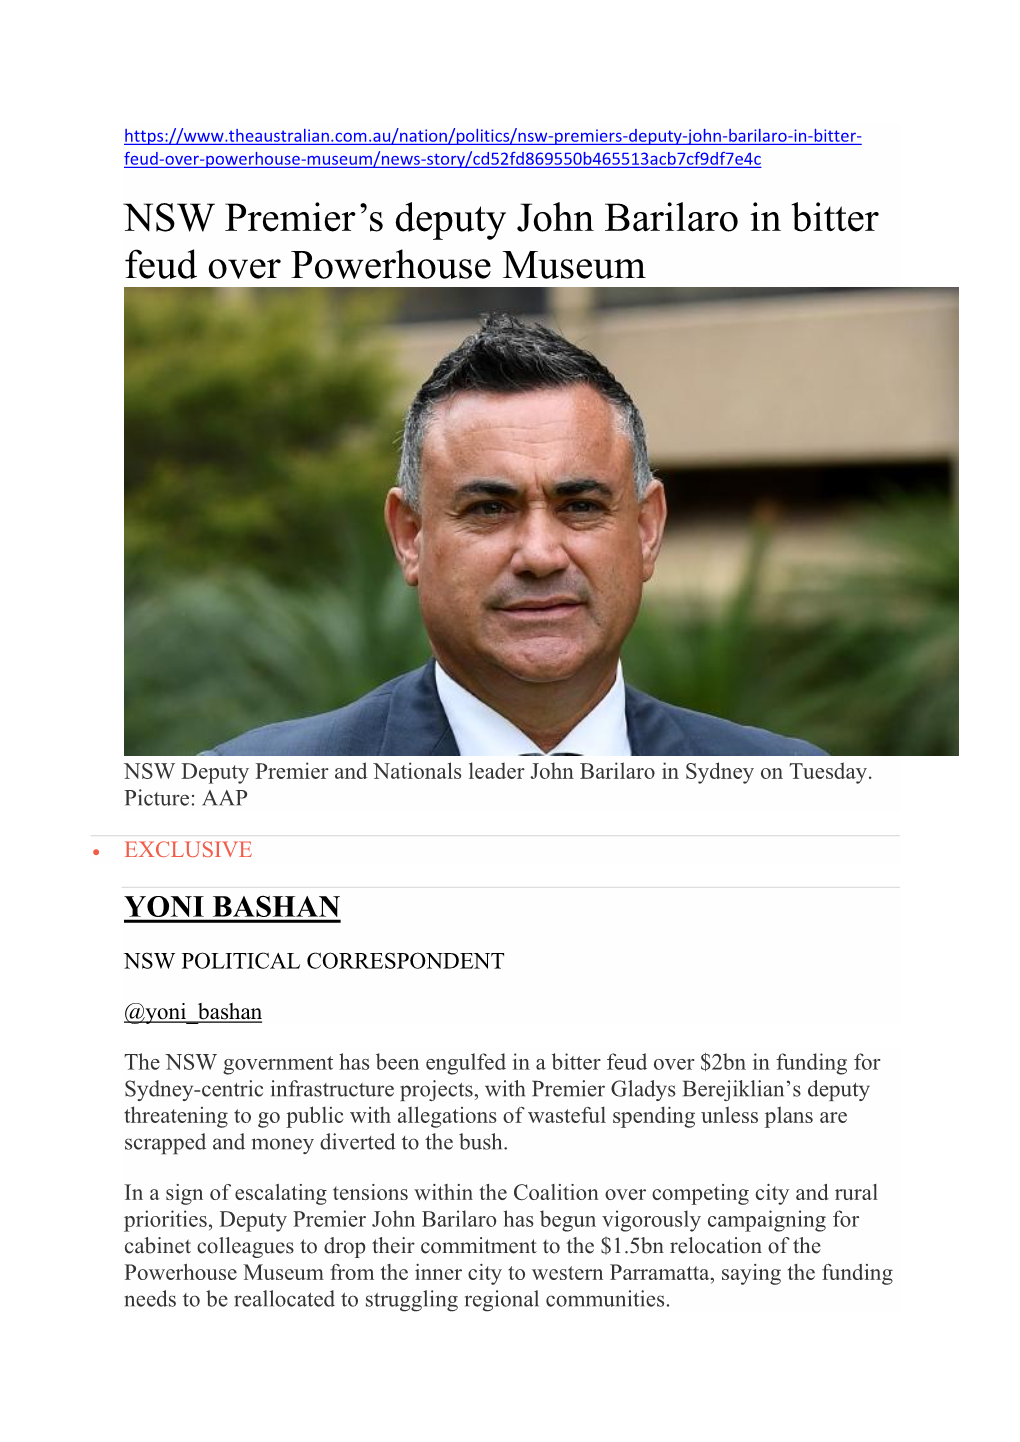 NSW Premier's Deputy John Barilaro in Bitter Feud Over Powerhouse